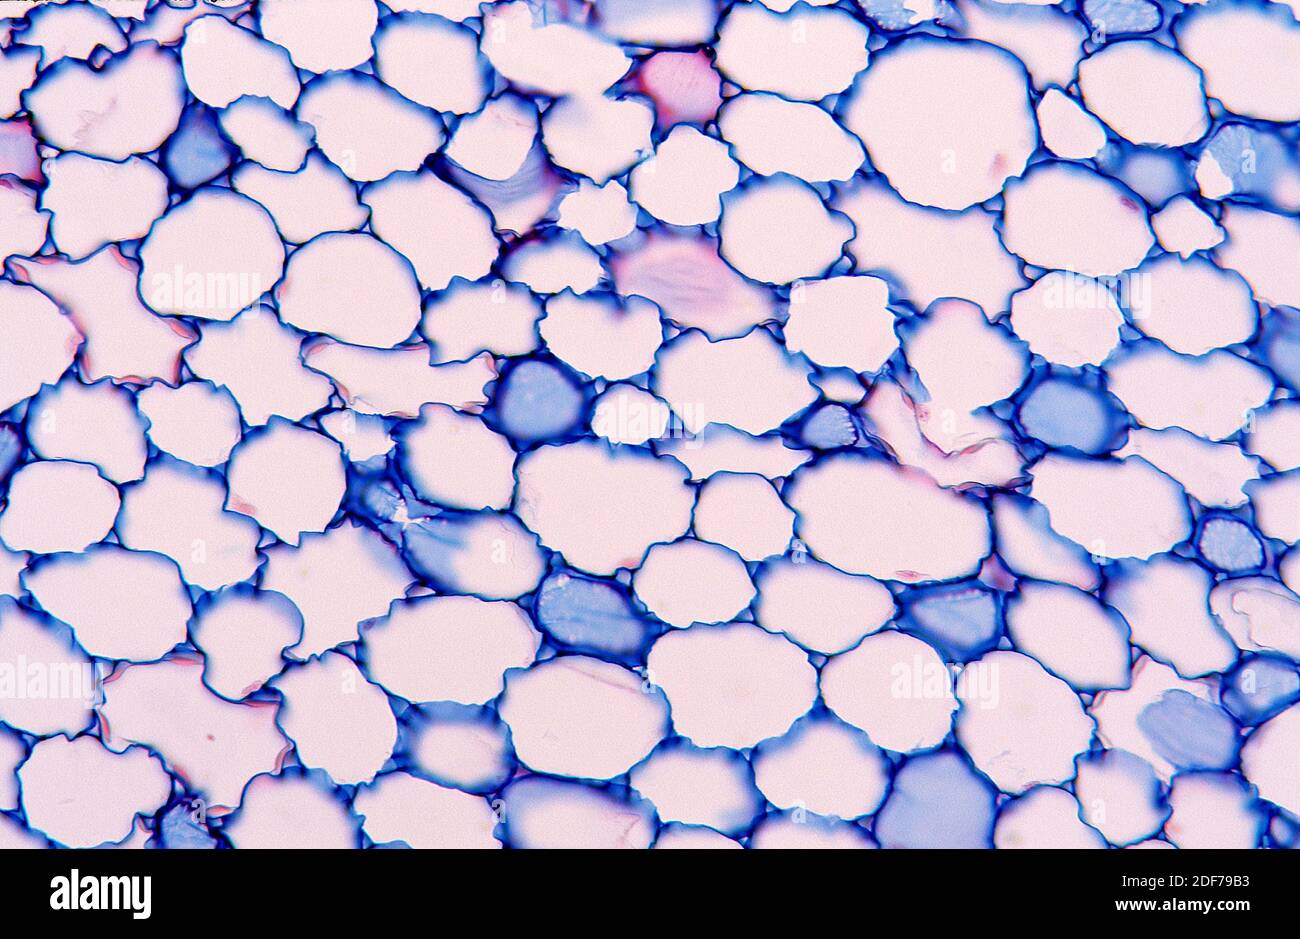 La plasmolisis es un proceso en el que las células pierden agua en una solución hipertónica. Fotomicrografía de tejido vegetal. Foto de stock